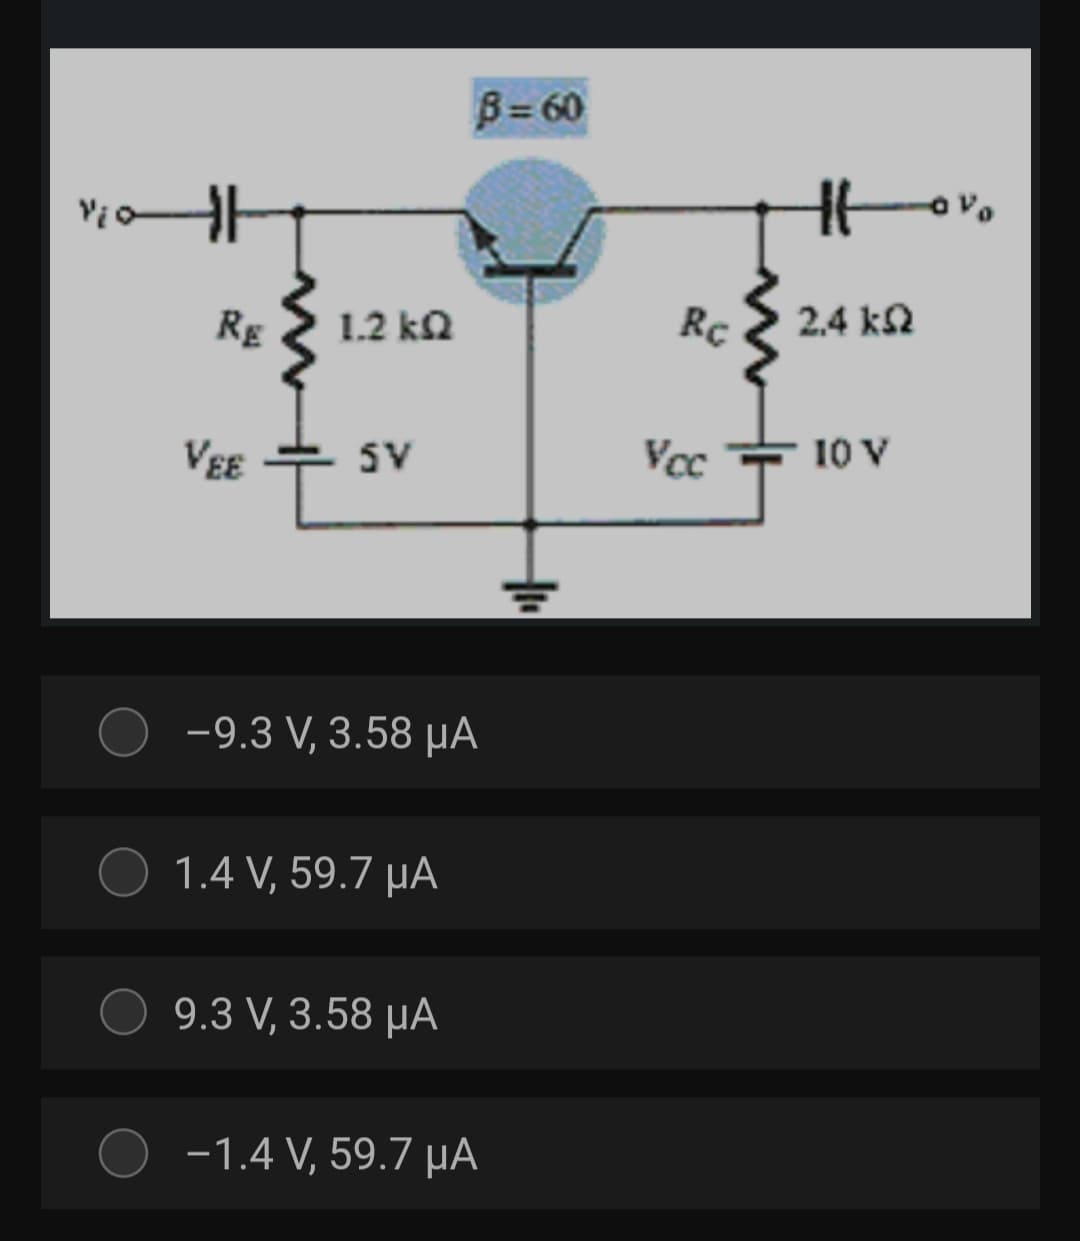 B=60
Rg
1.2 ka
Rc
2.4 kN
VEE
5V
Vcc
10 V
-9.3 V, 3.58 µA
1.4 V, 59.7 µA
9.3 V, 3.58 µA
-1.4 V, 59.7 µA
